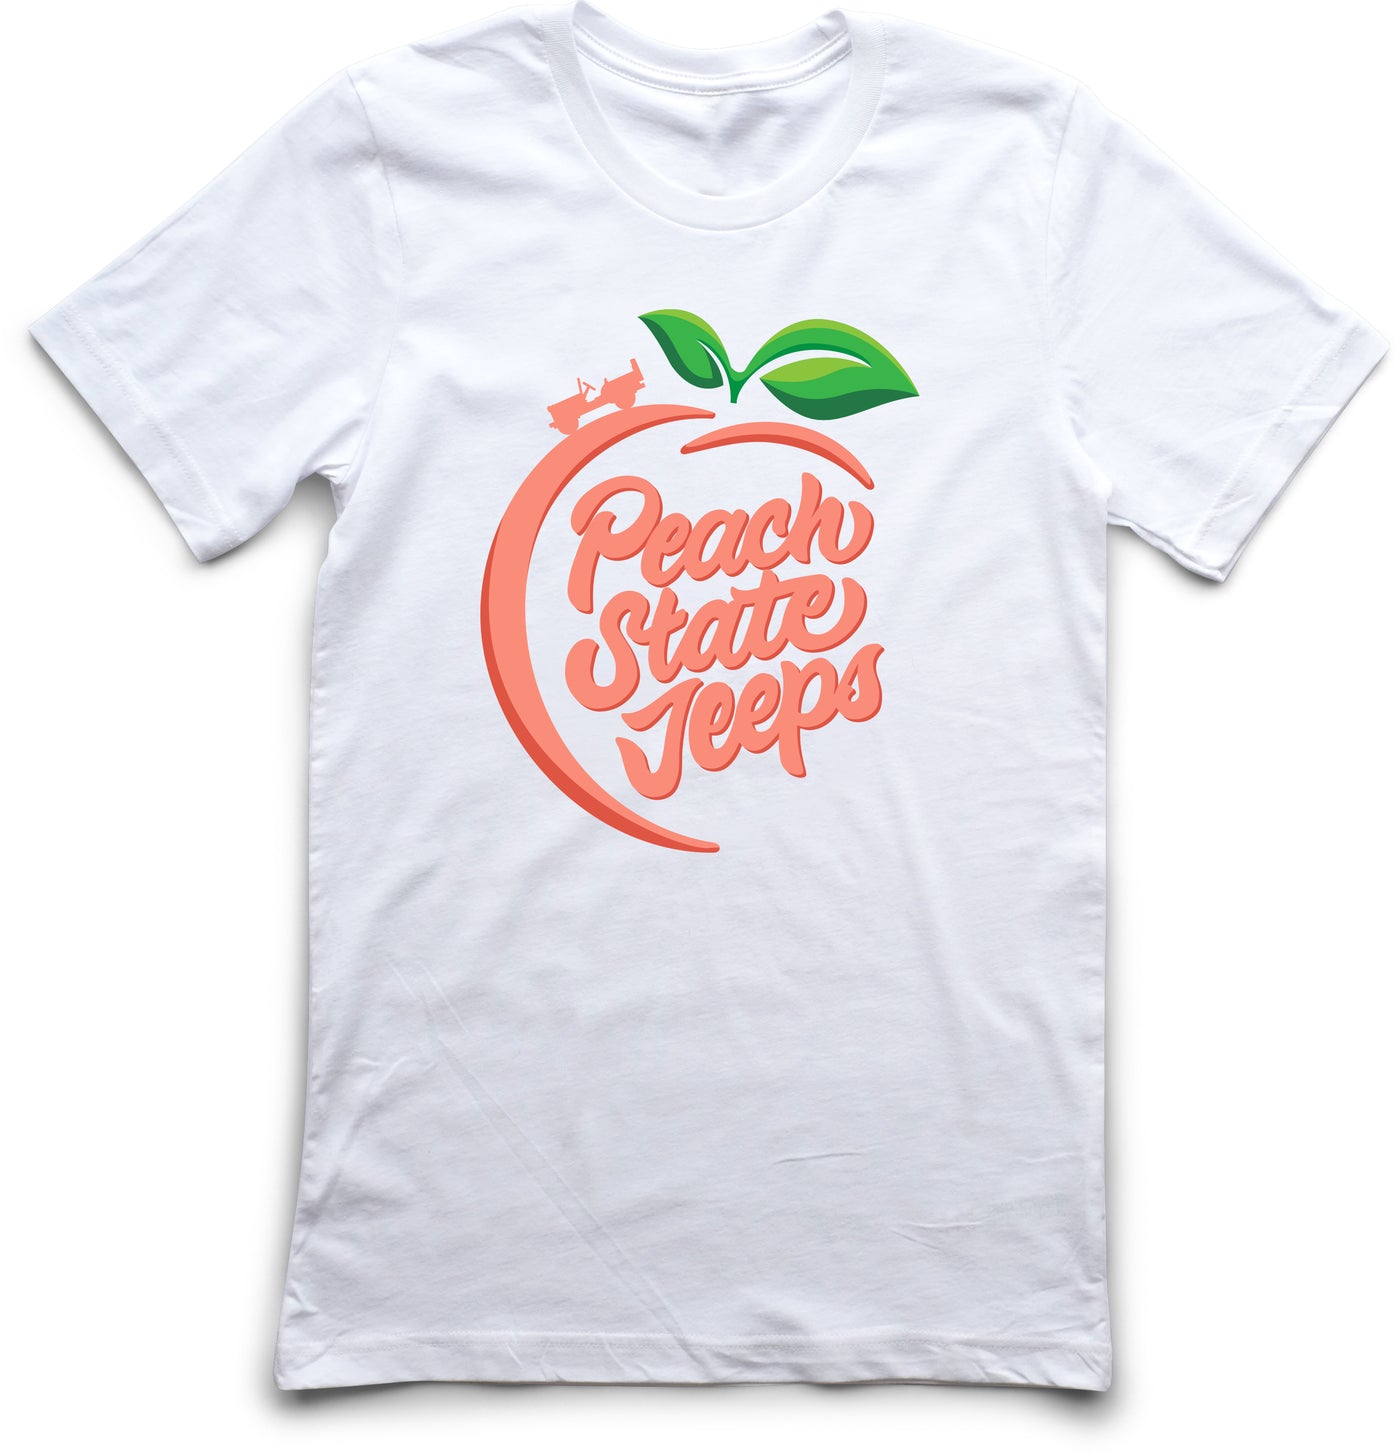 Short Sleeve "Peachy" Logo Tee